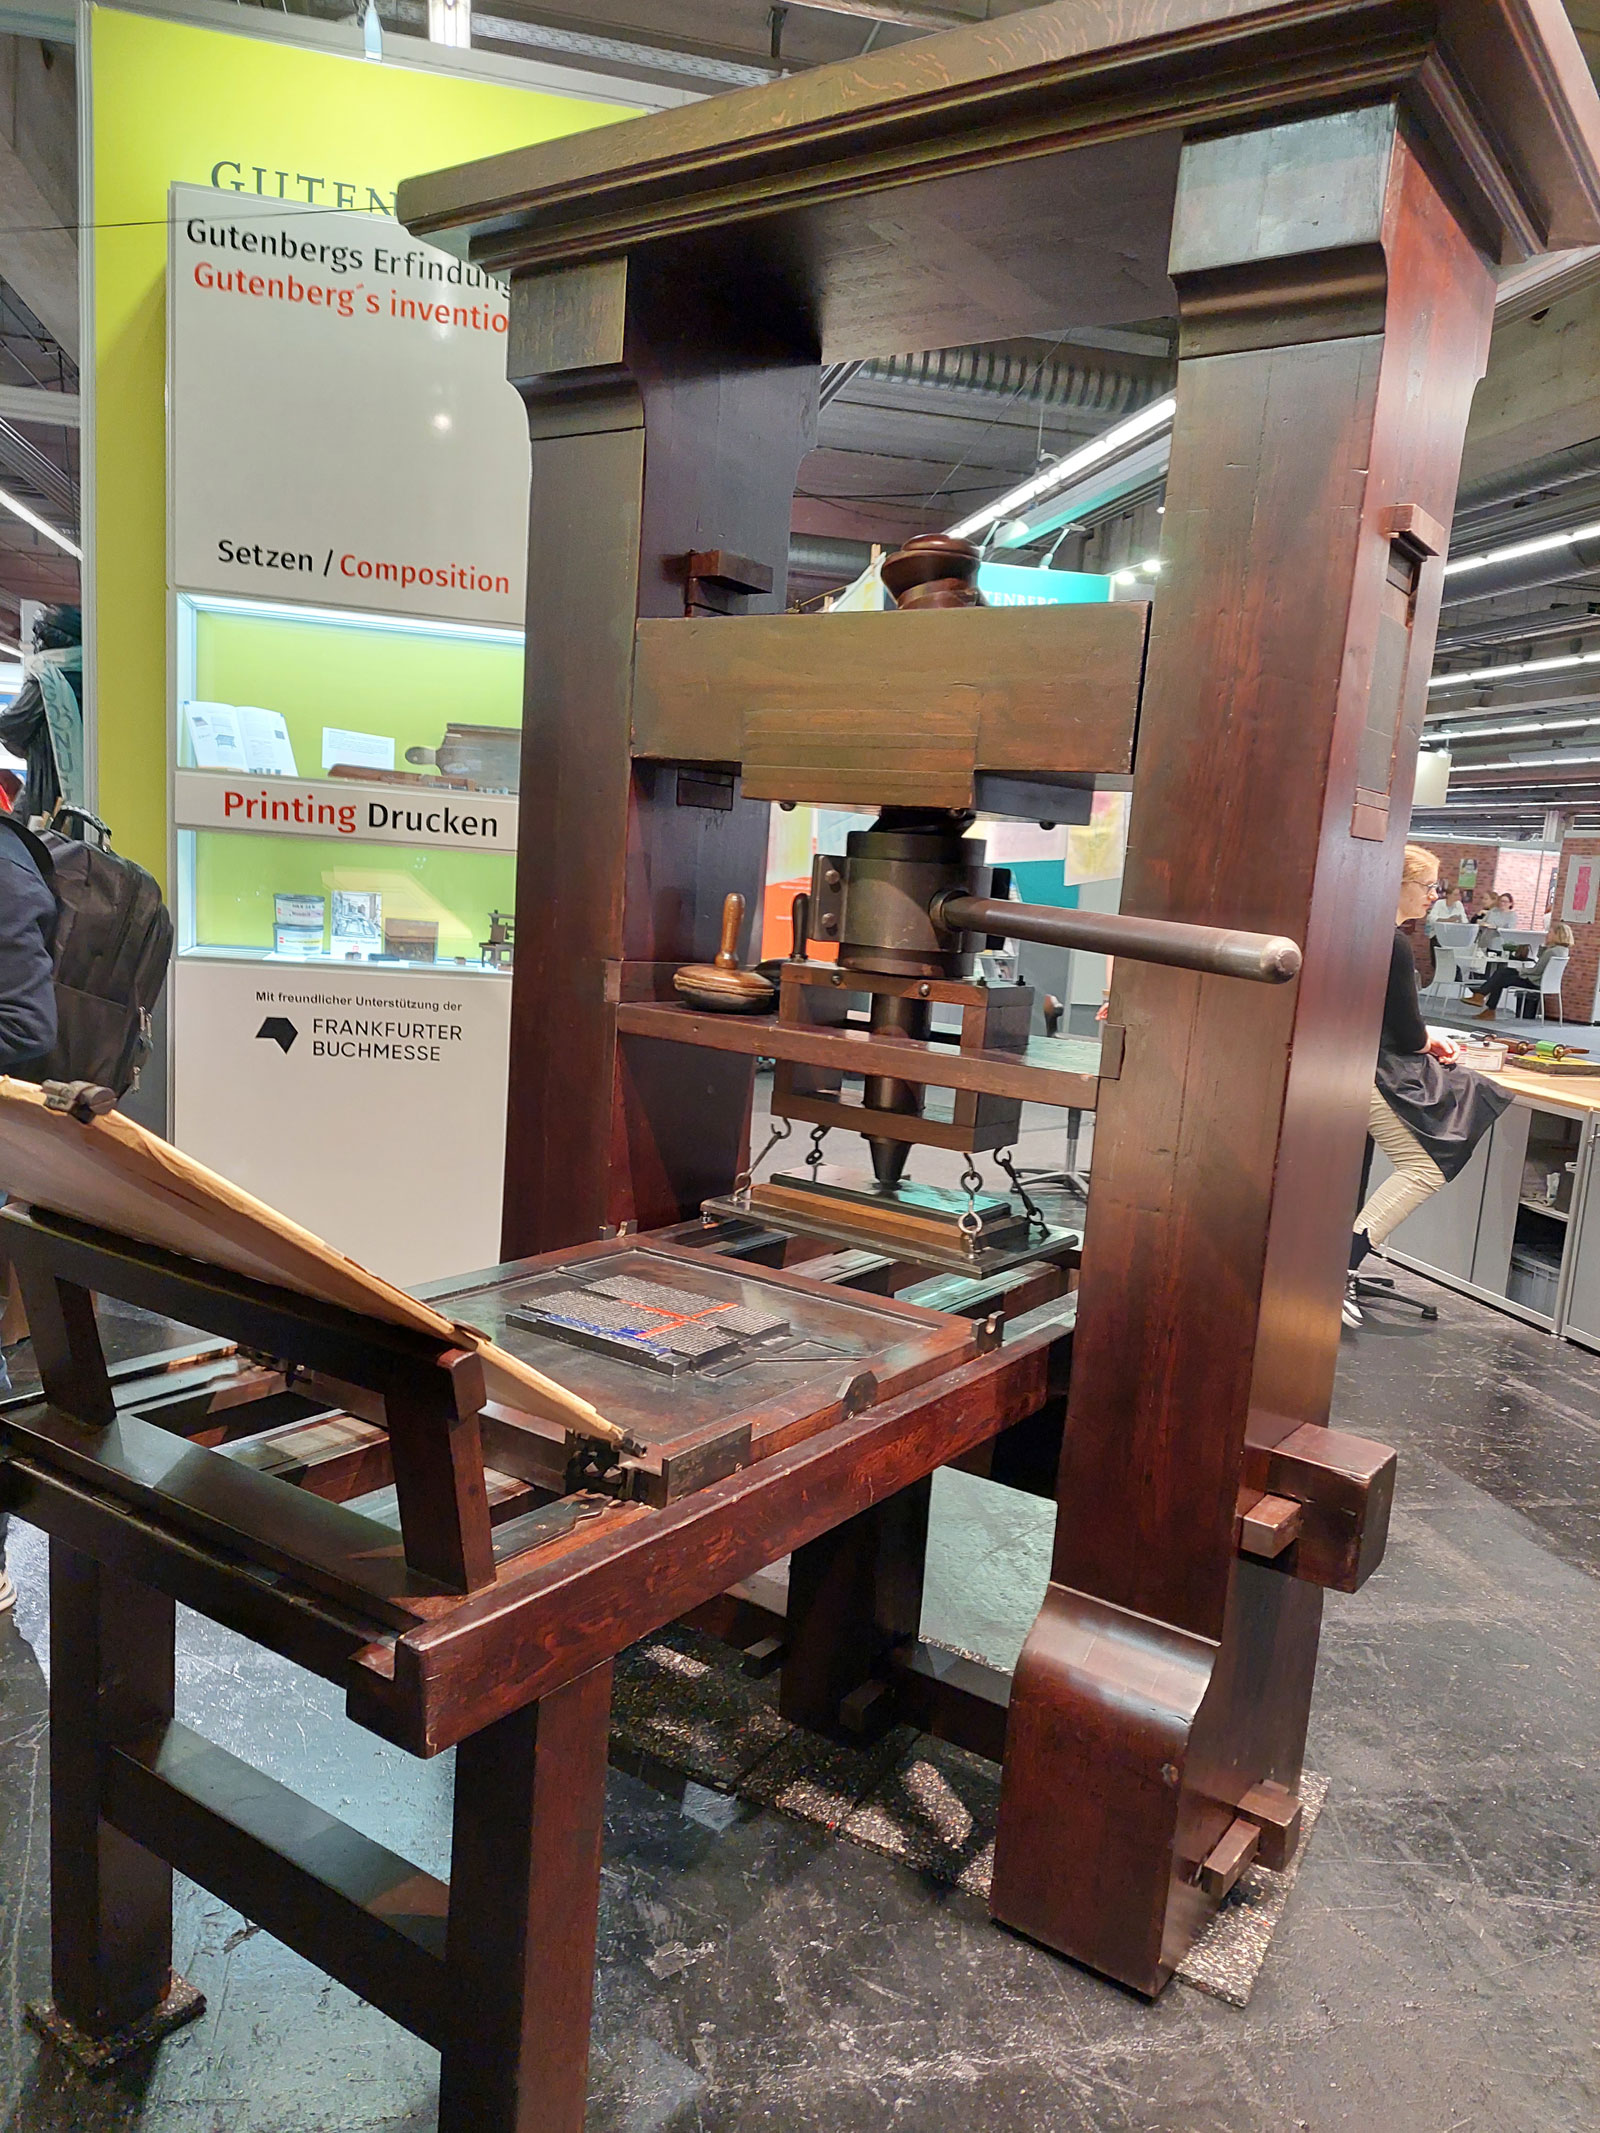 Frankfurtes grāmatu tirgus. Senais satiek mūsdienīgo. Gūtenberga izgudrojums - drukas iekārta.